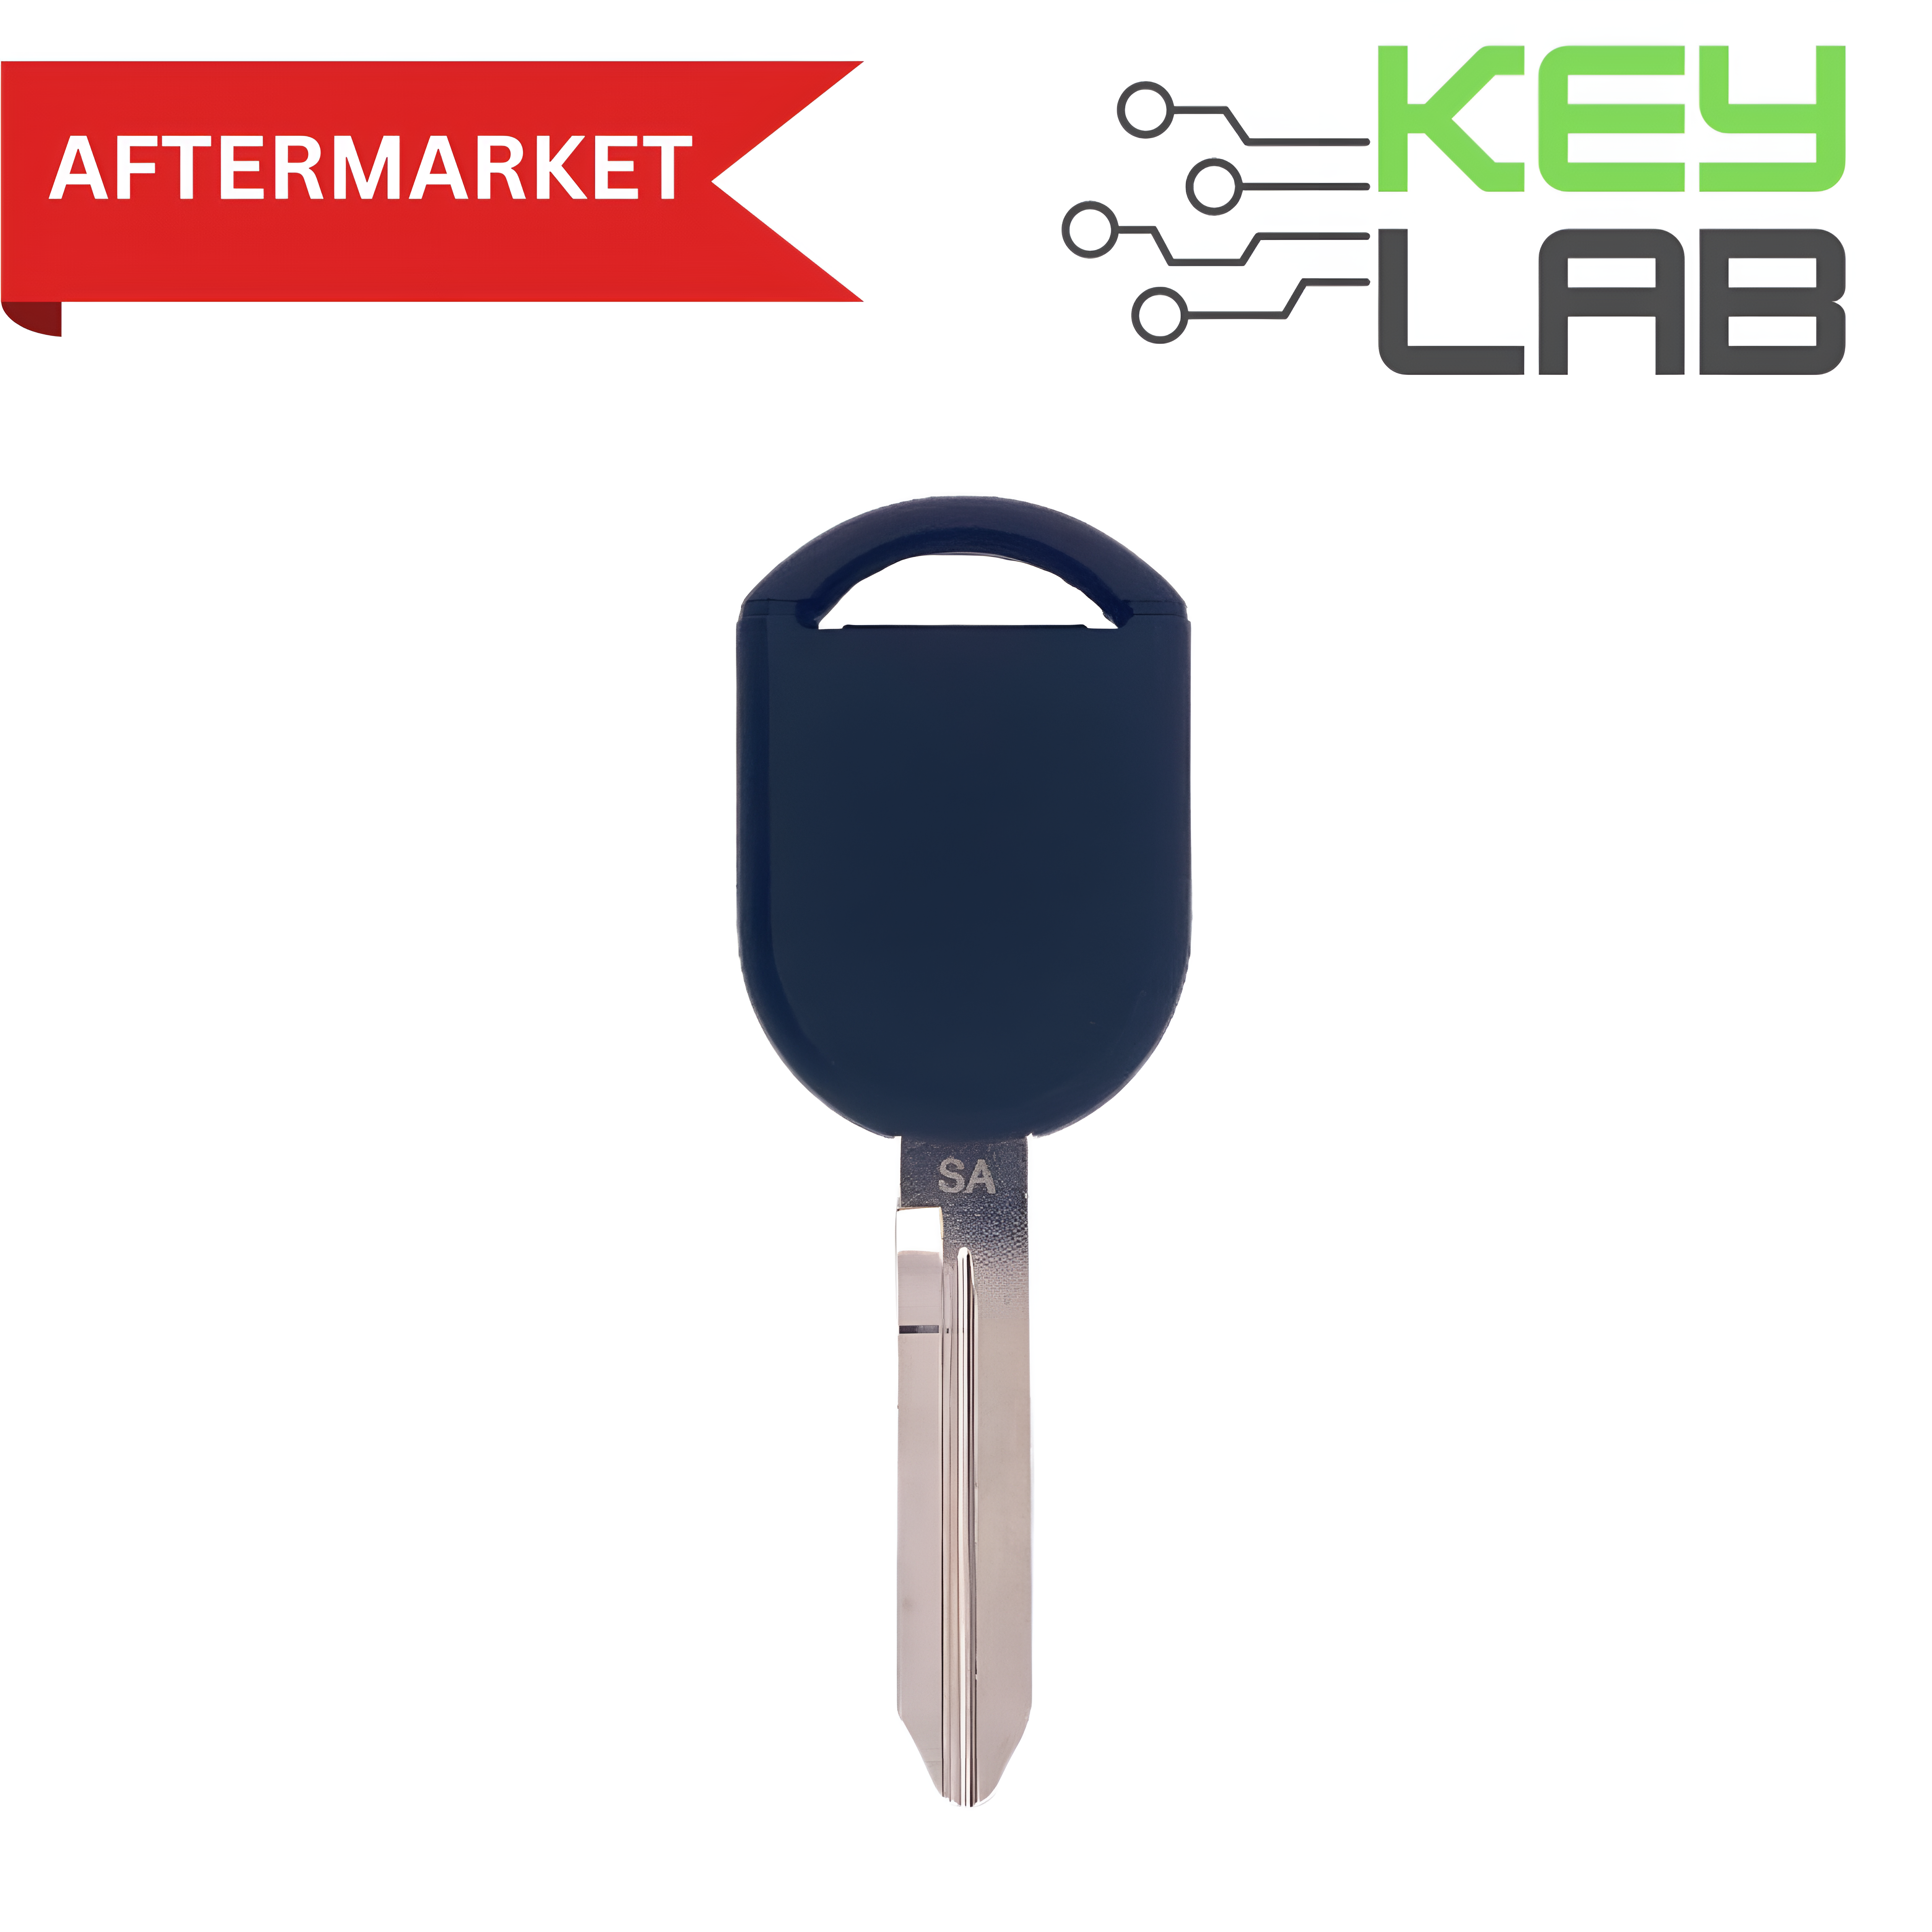 Ford Aftermarket 2000-2020 Transponder Key (OEM CHIP) H92-PT PN# 5913441, 164-R8040 - Royal Key Supply